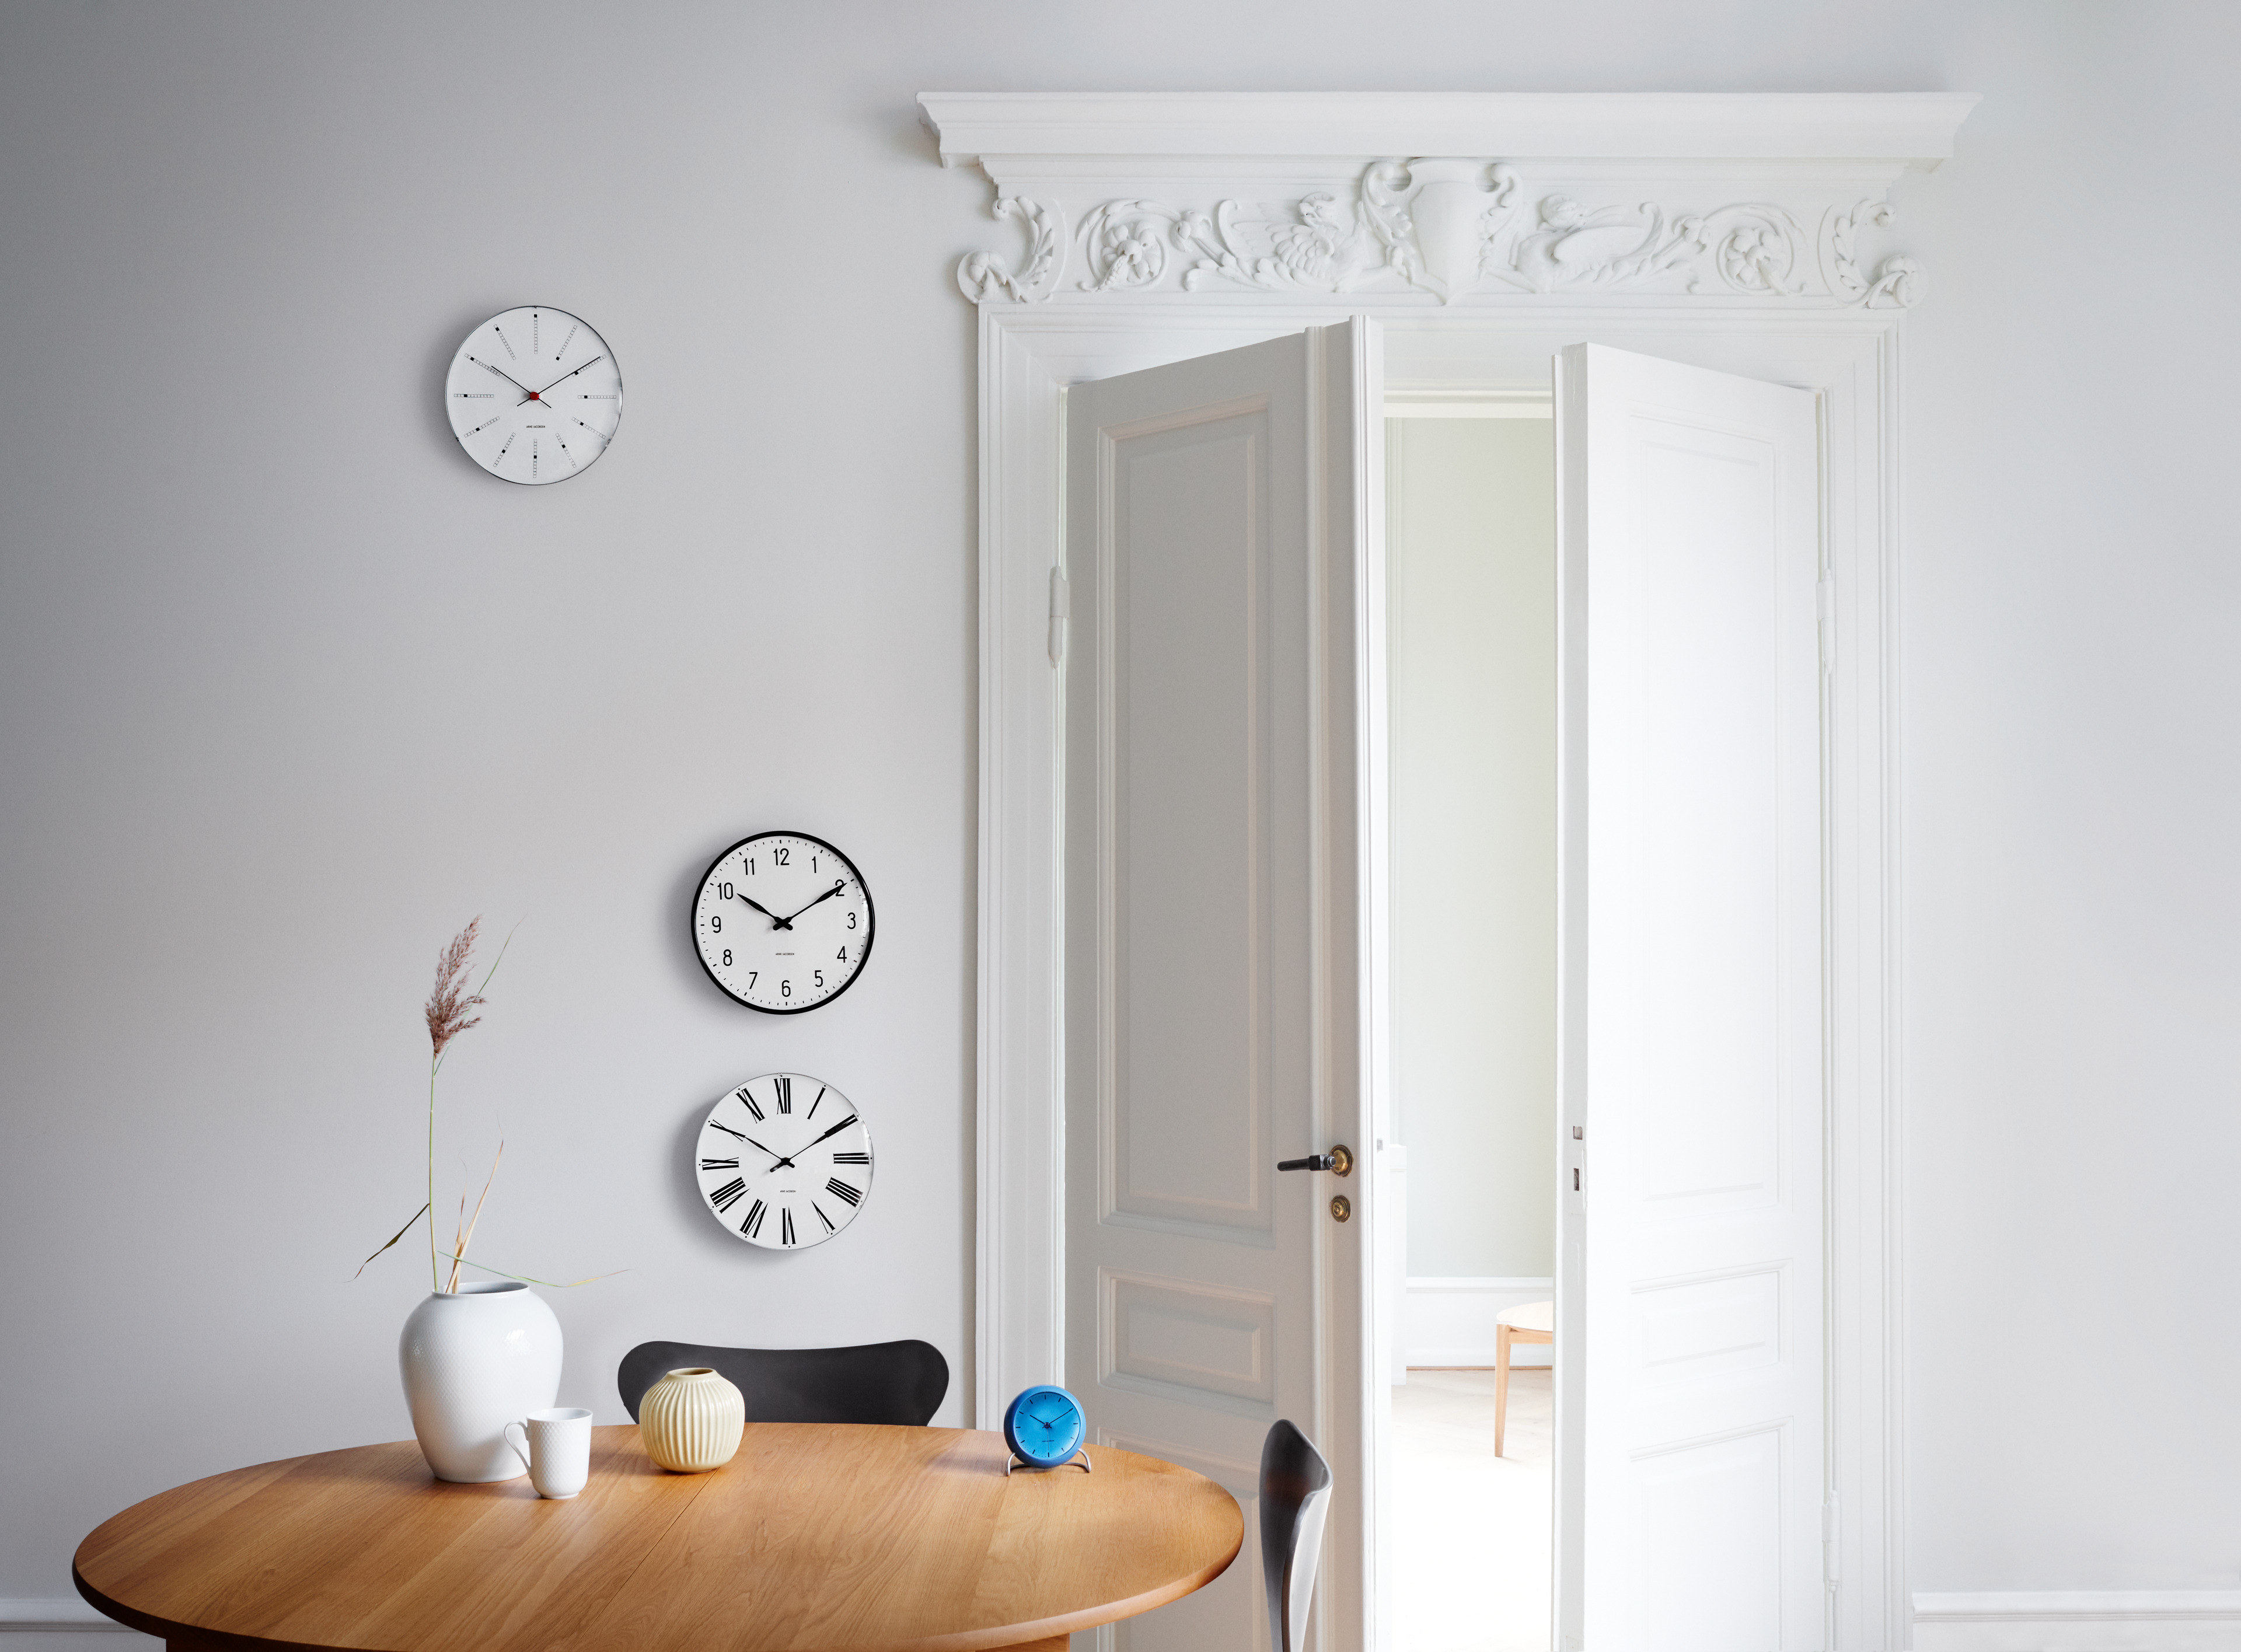 Arne Jacobsen designer wall clocks